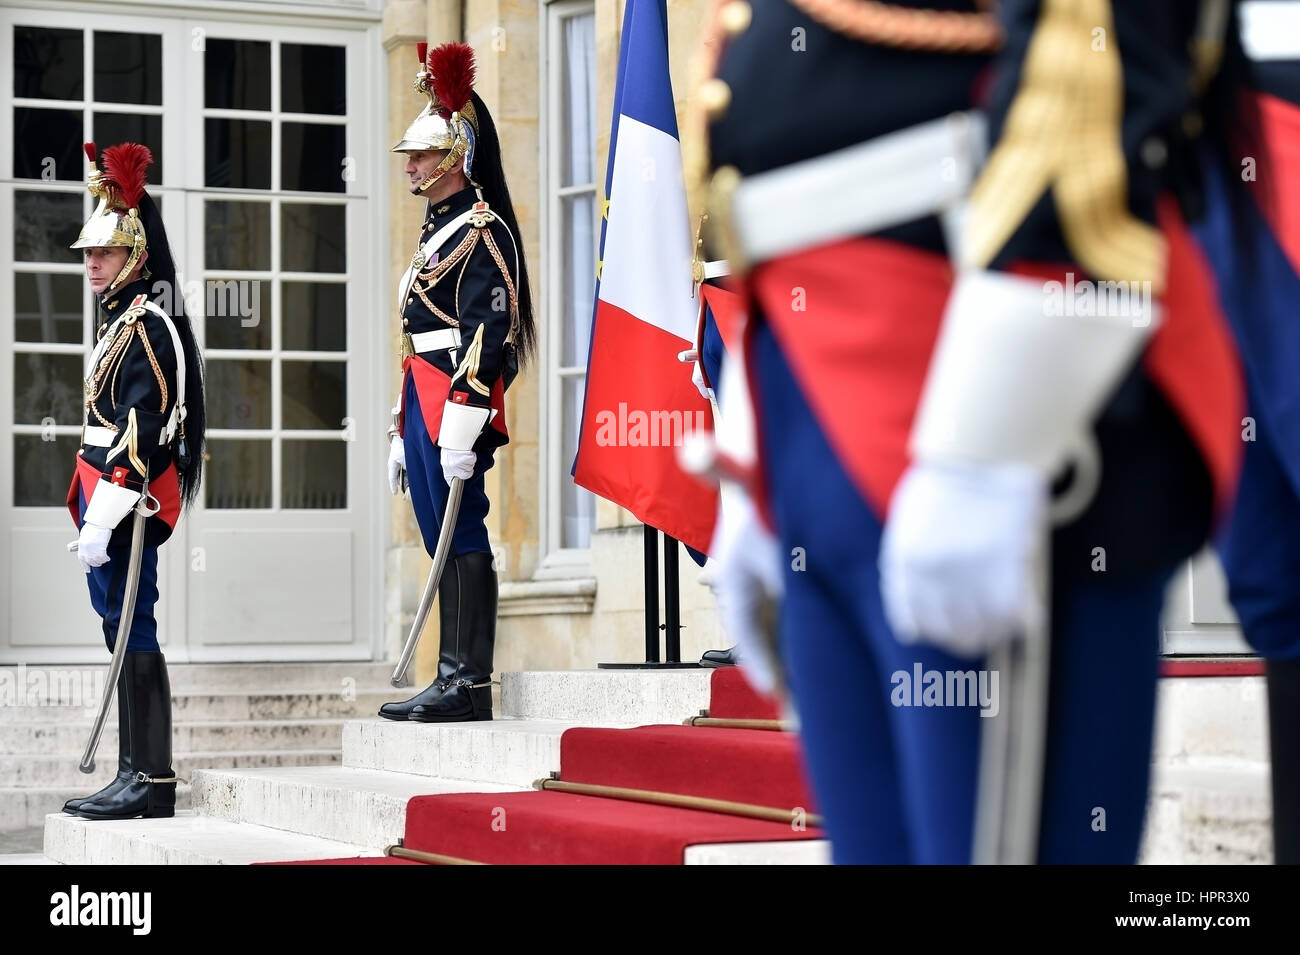 PARIS, FRANCE - Le 10 juin : l'Hôtel Matignon Garde républicaine d'honneur au cours d'une cérémonie d'accueil le 10 juin 2016 à Paris. Matignon est le fonctionnaire resid Banque D'Images